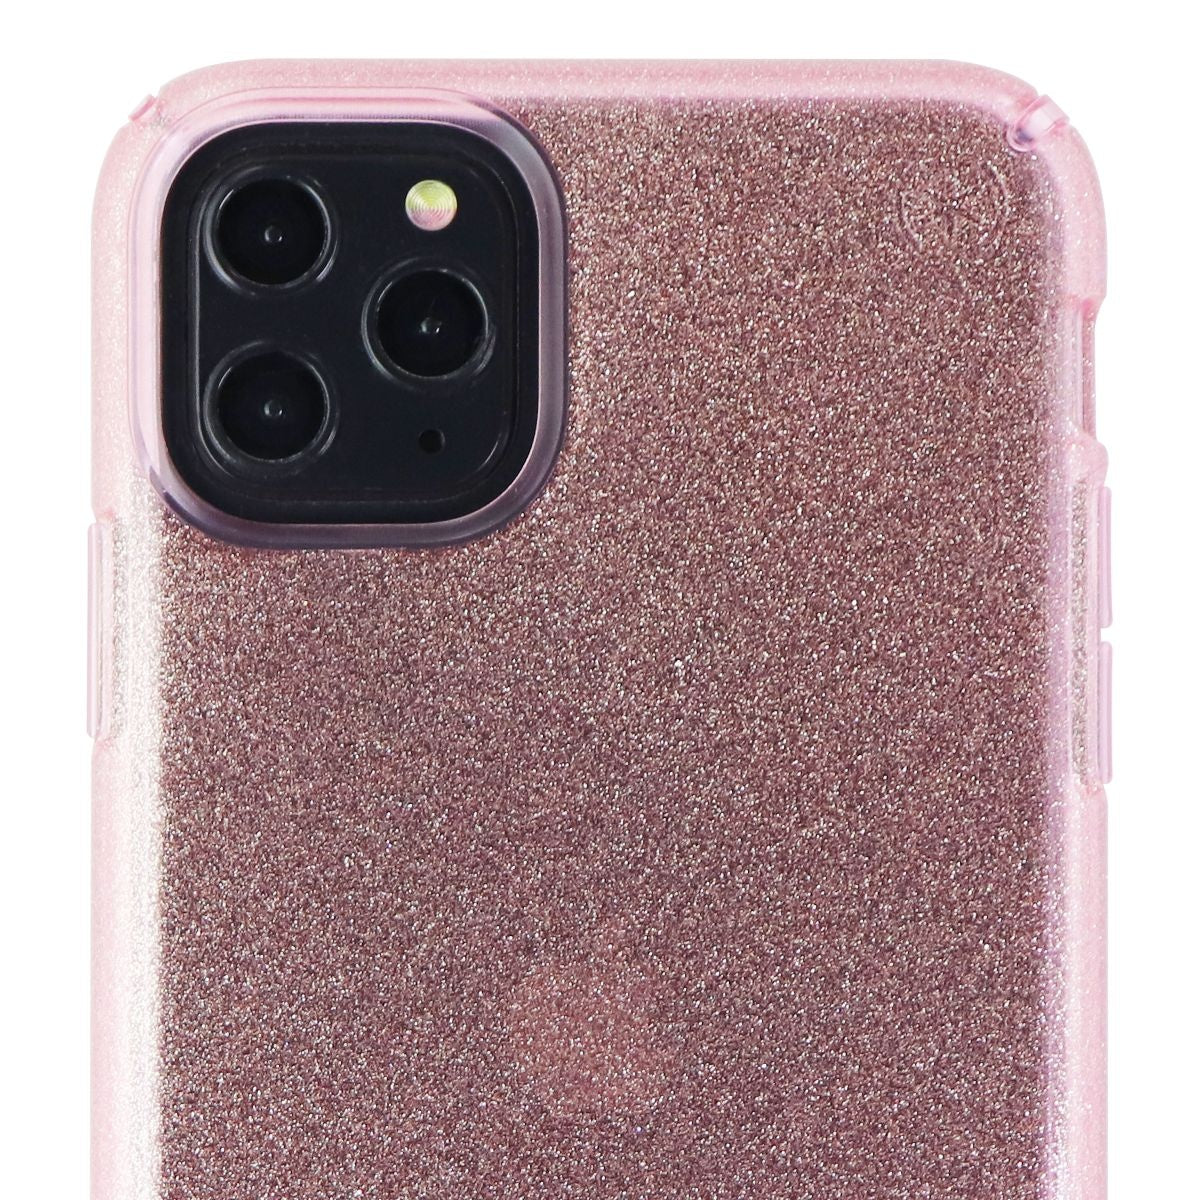 Speck Presidio Clear + Glitter Case for iPhone 11 Pro Max - Bella Pink/Glitter